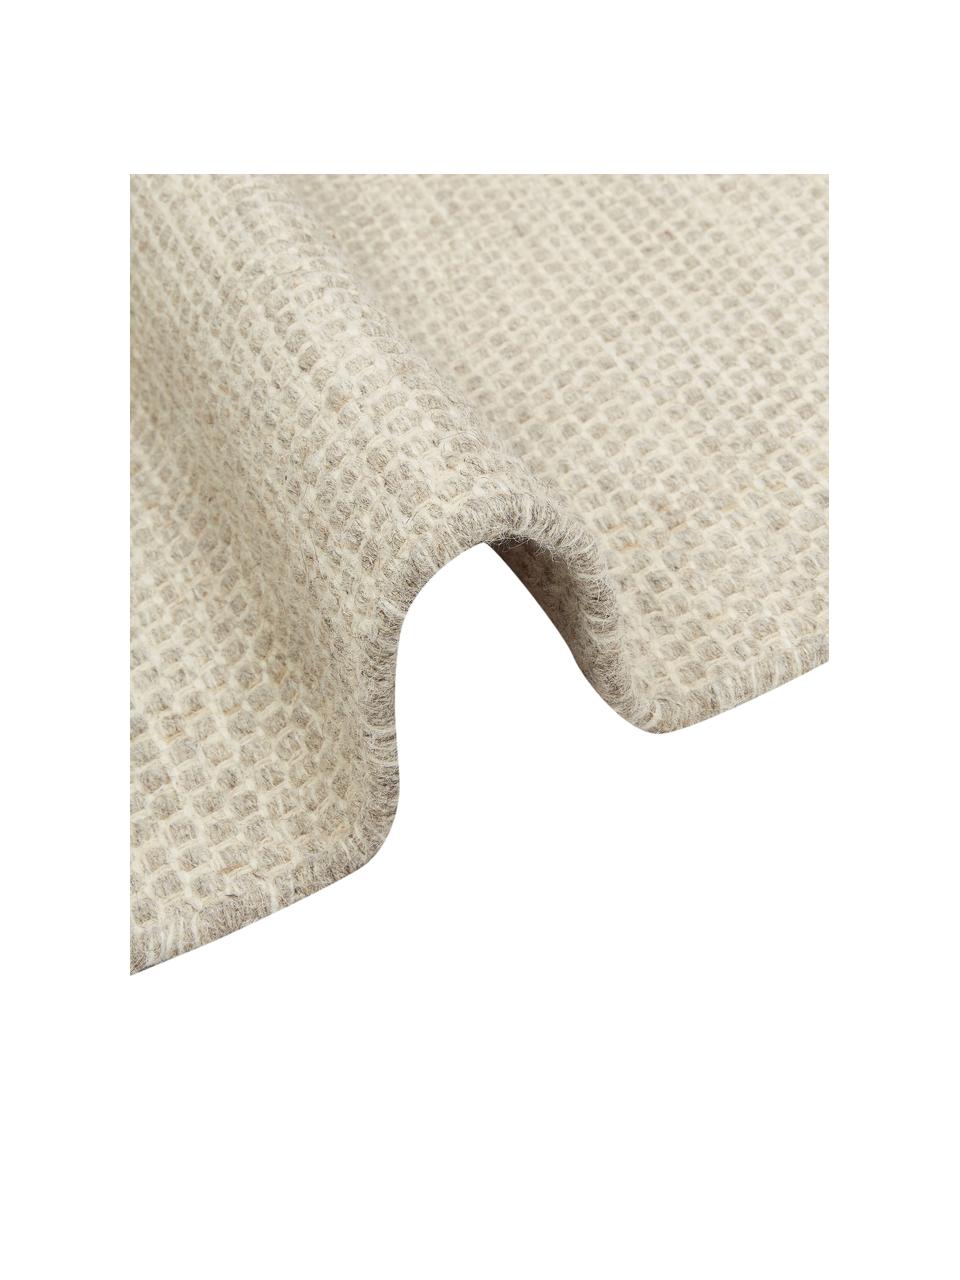 Passatoia in lana color beige/grigio chiaro maculato tessuta a mano Asko, Retro: cotone Nel caso delle pas, Beige, grigio chiaro, Larg. 80 x Lung. 250 cm